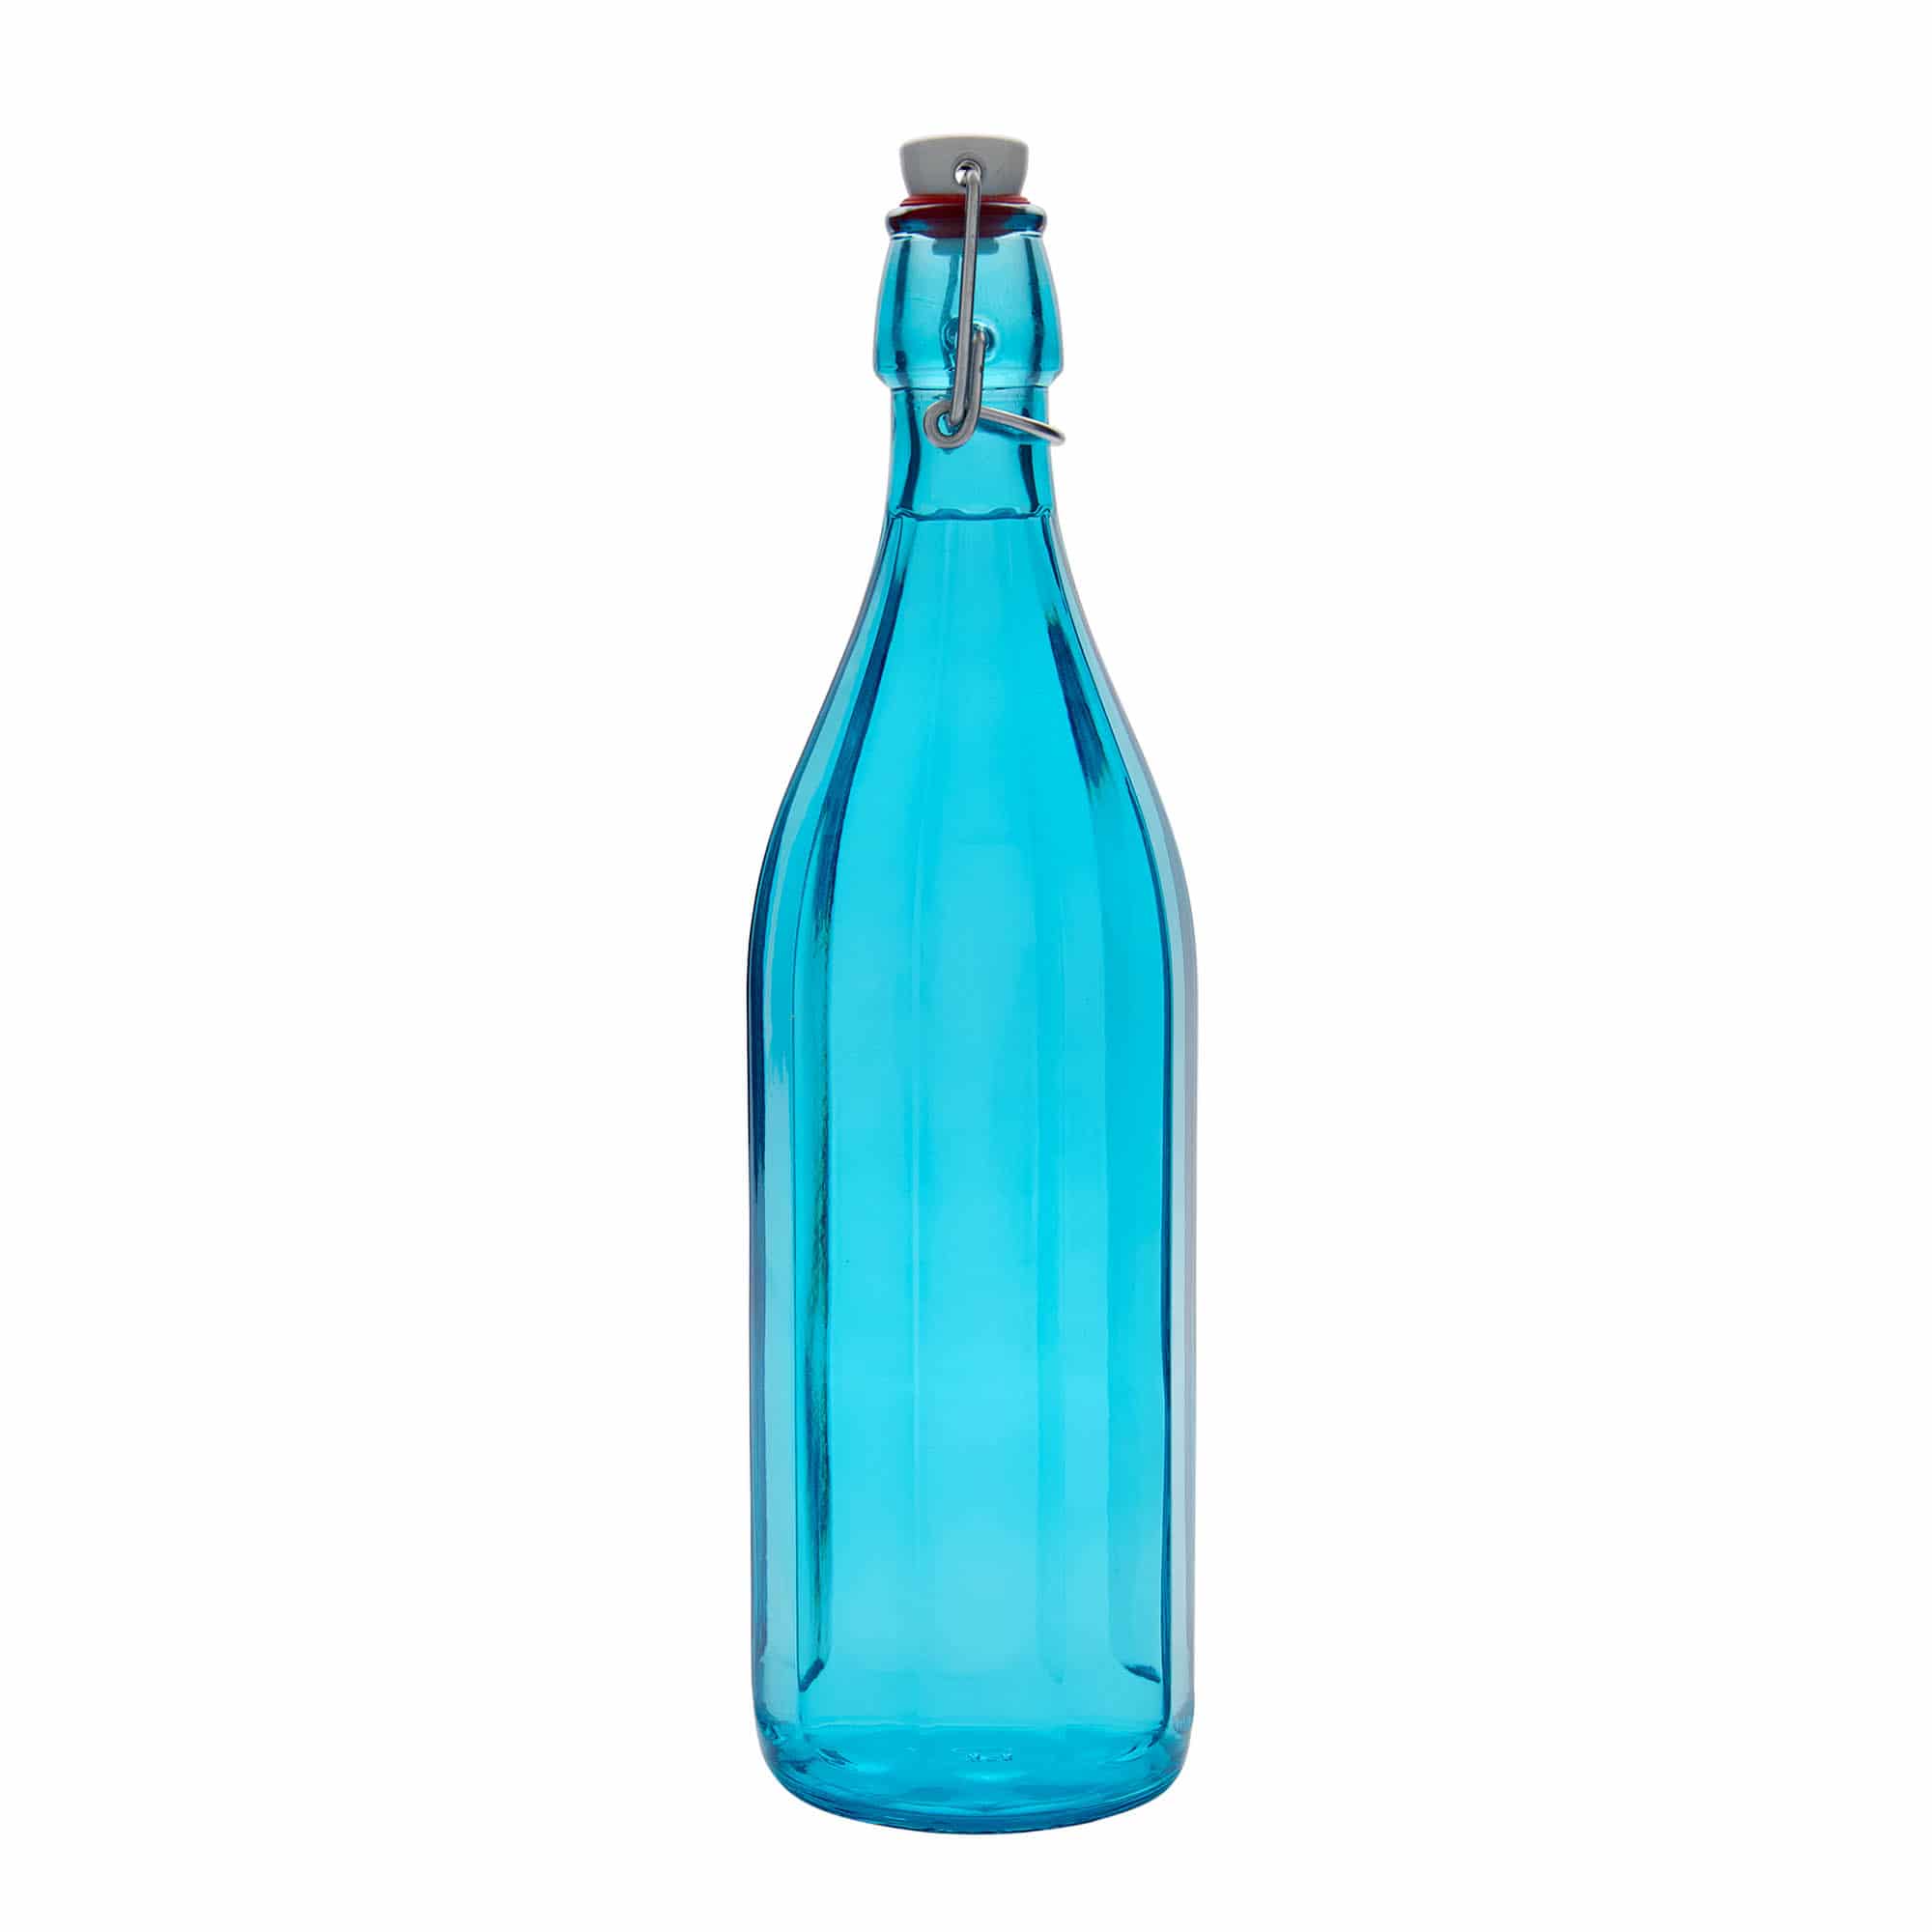 1000 ml-es üvegpalack 'Oxford', tízszögletű, azúrkék, szájnyílás: csatos zár